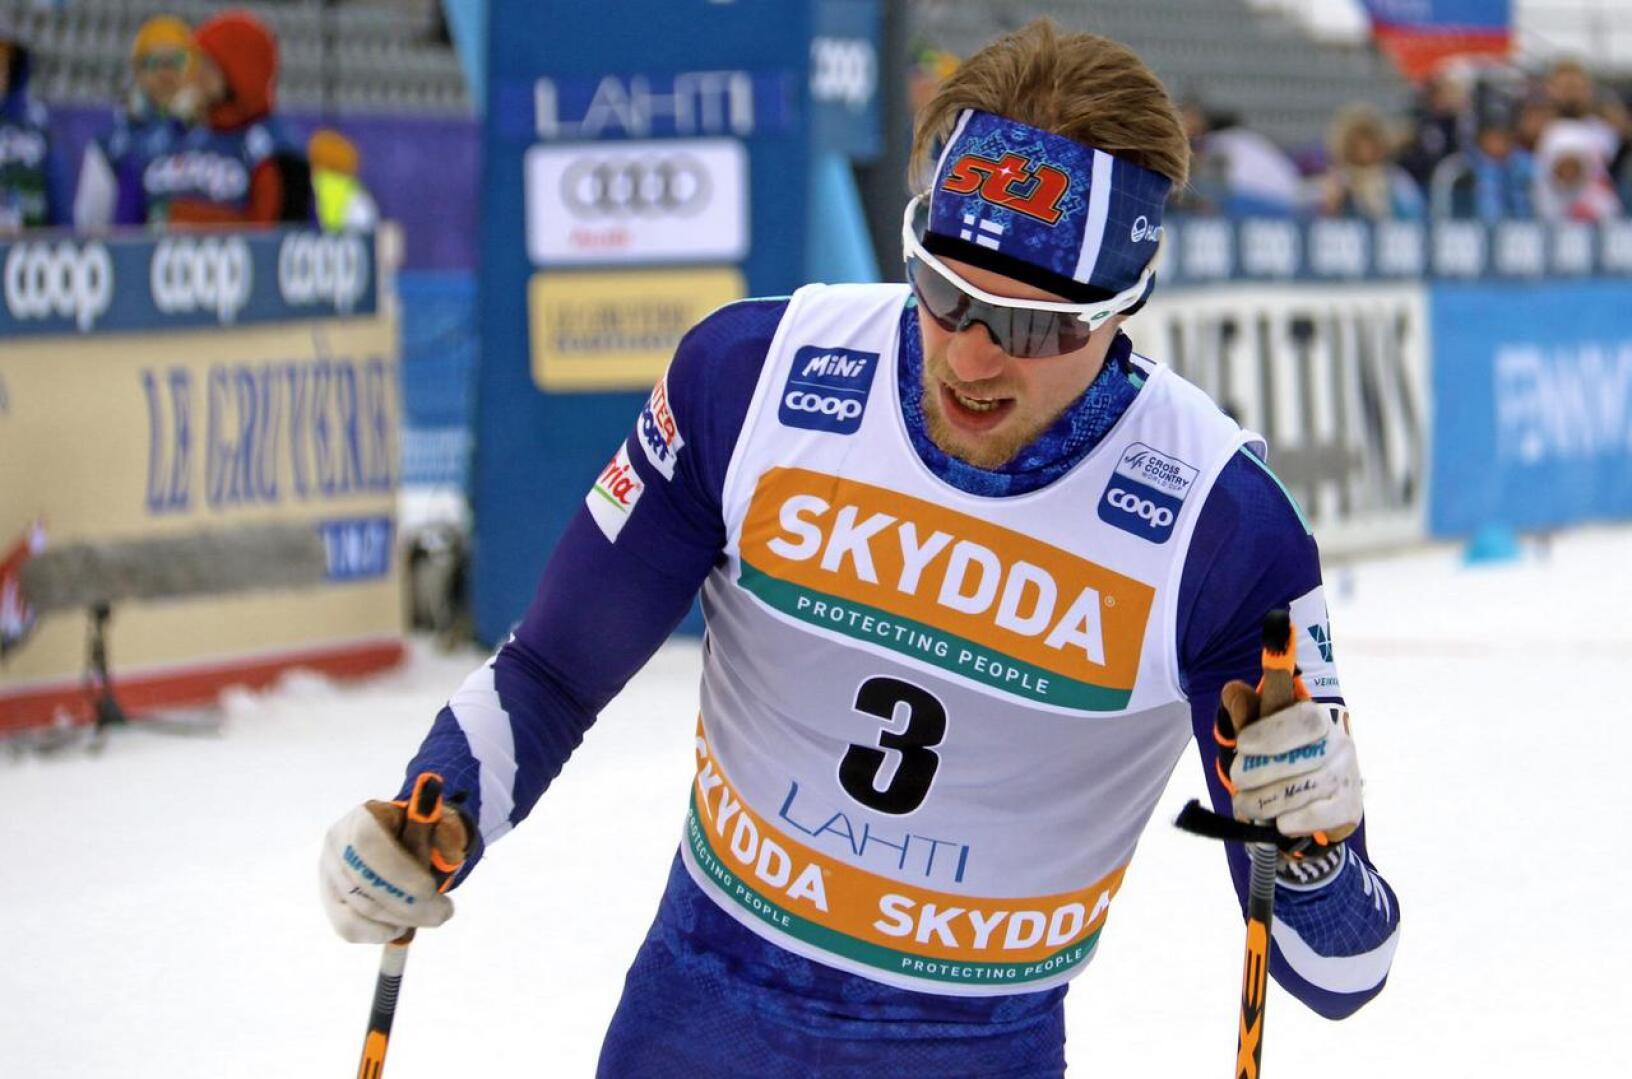 Joni Mäki on tällä kaudella noussut ensimmäistä kertaa maailmancupin palkintokorokkeelle, kun hän hiihti joulukuussa parisprintissä kolmanneksi yhdessä Ristomatti Hakolan kanssa.